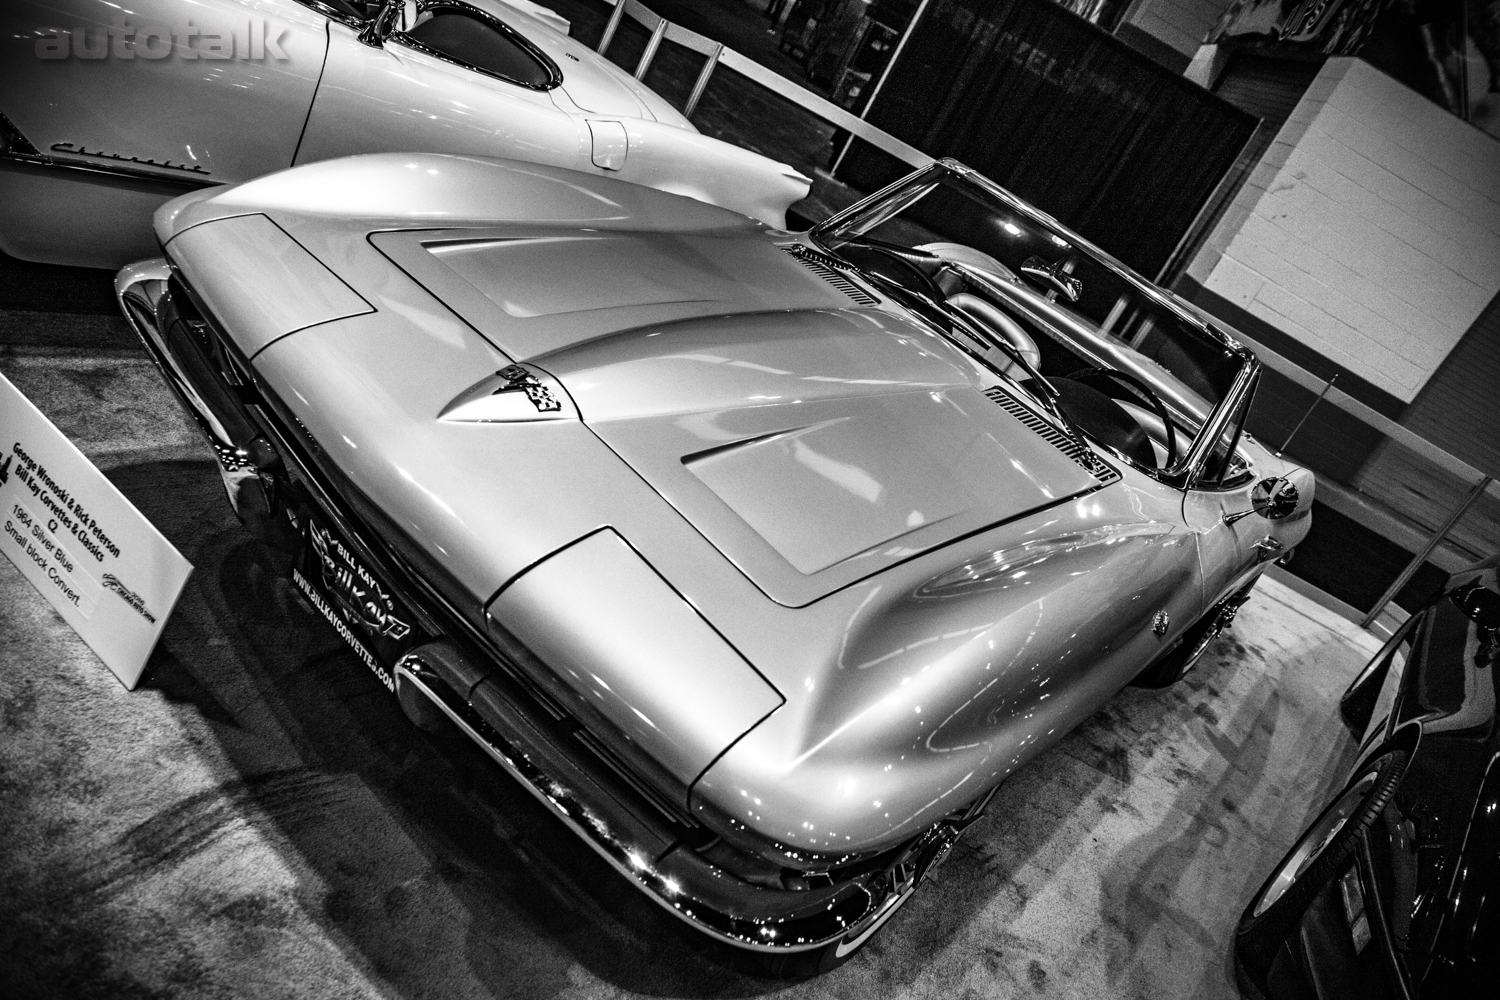 Vintage Corvette at 2016 Chicago Auto Show